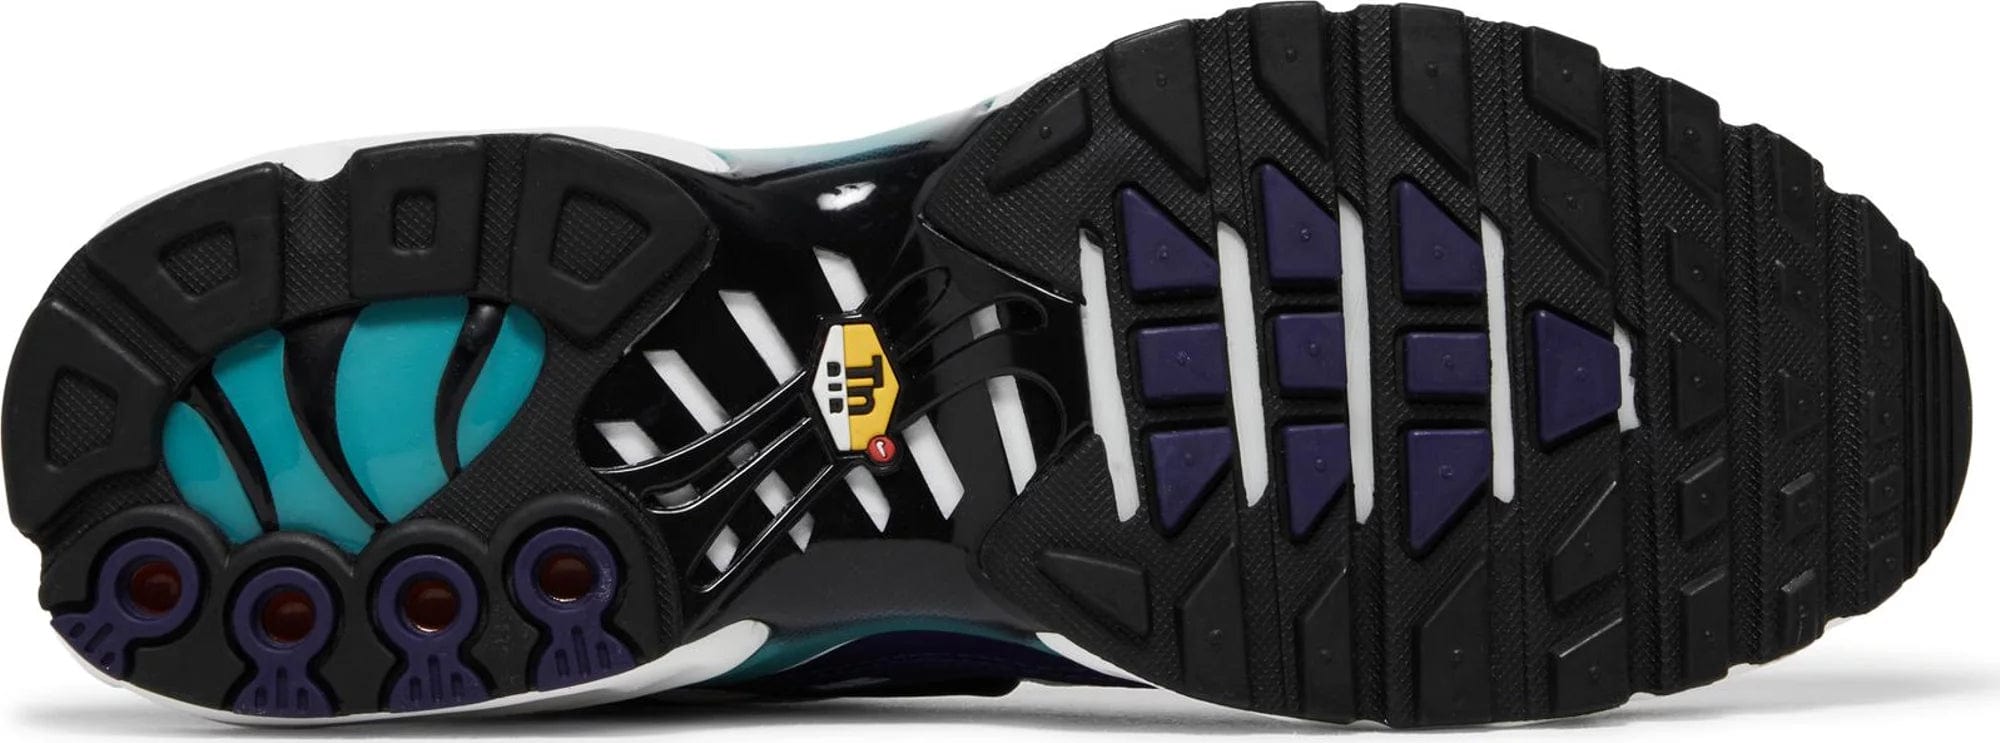 sneakers Nike Air Max Plus TN Grape Men's